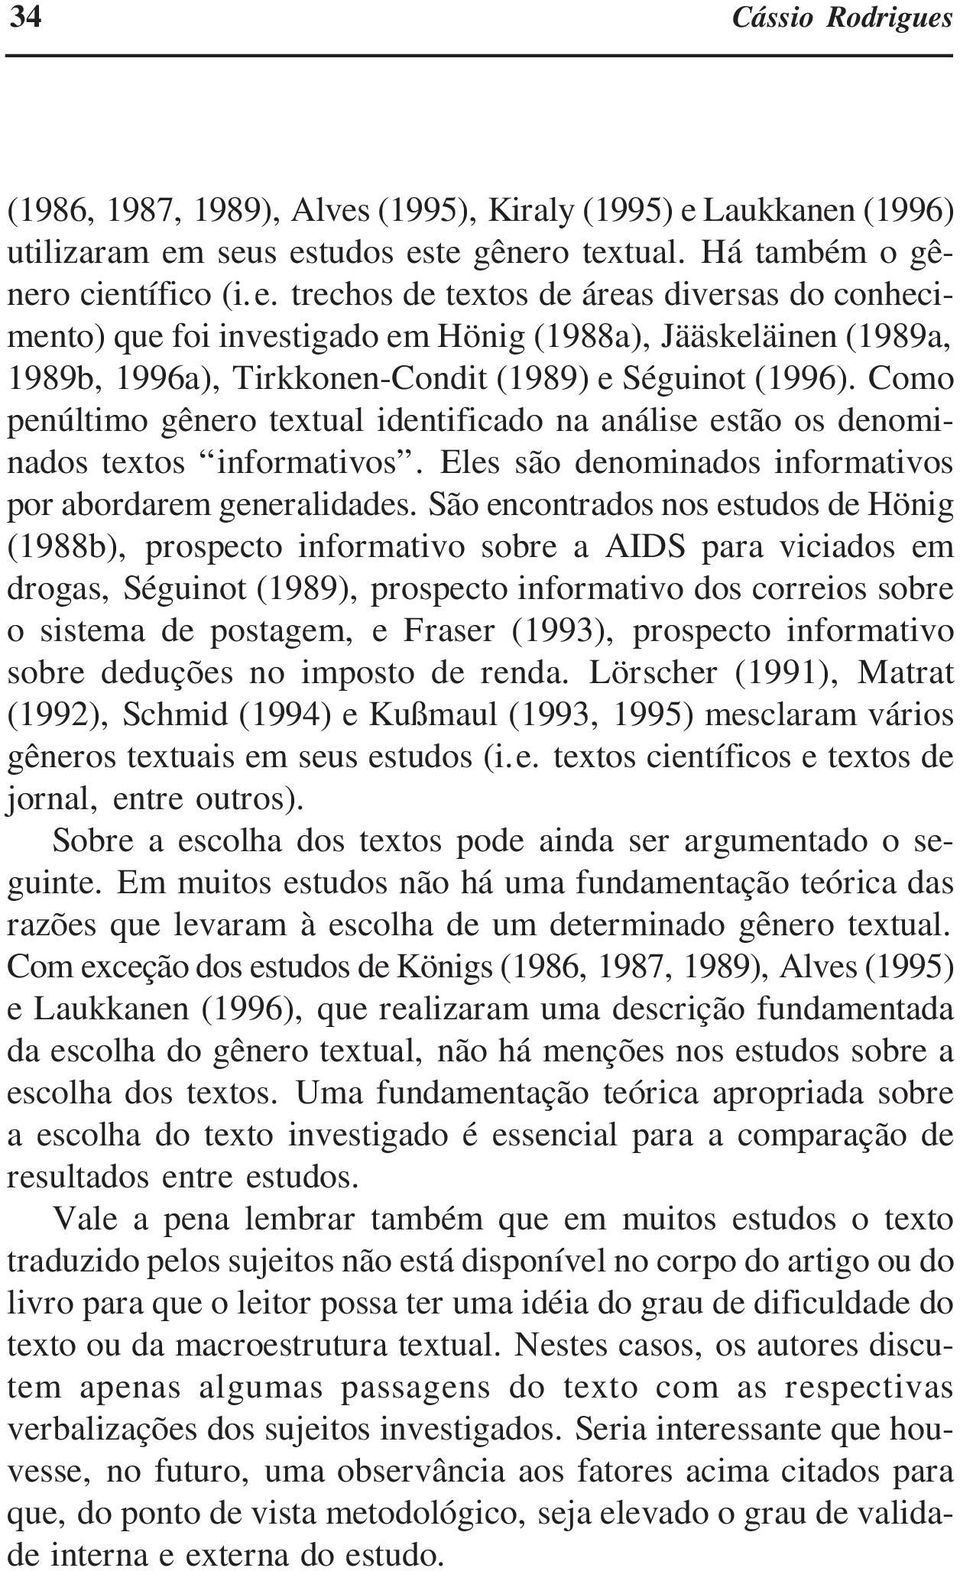 São encontrados nos estudos de Hönig (1988b), prospecto informativo sobre a AIDS para viciados em drogas, Séguinot (1989), prospecto informativo dos correios sobre o sistema de postagem, e Fraser